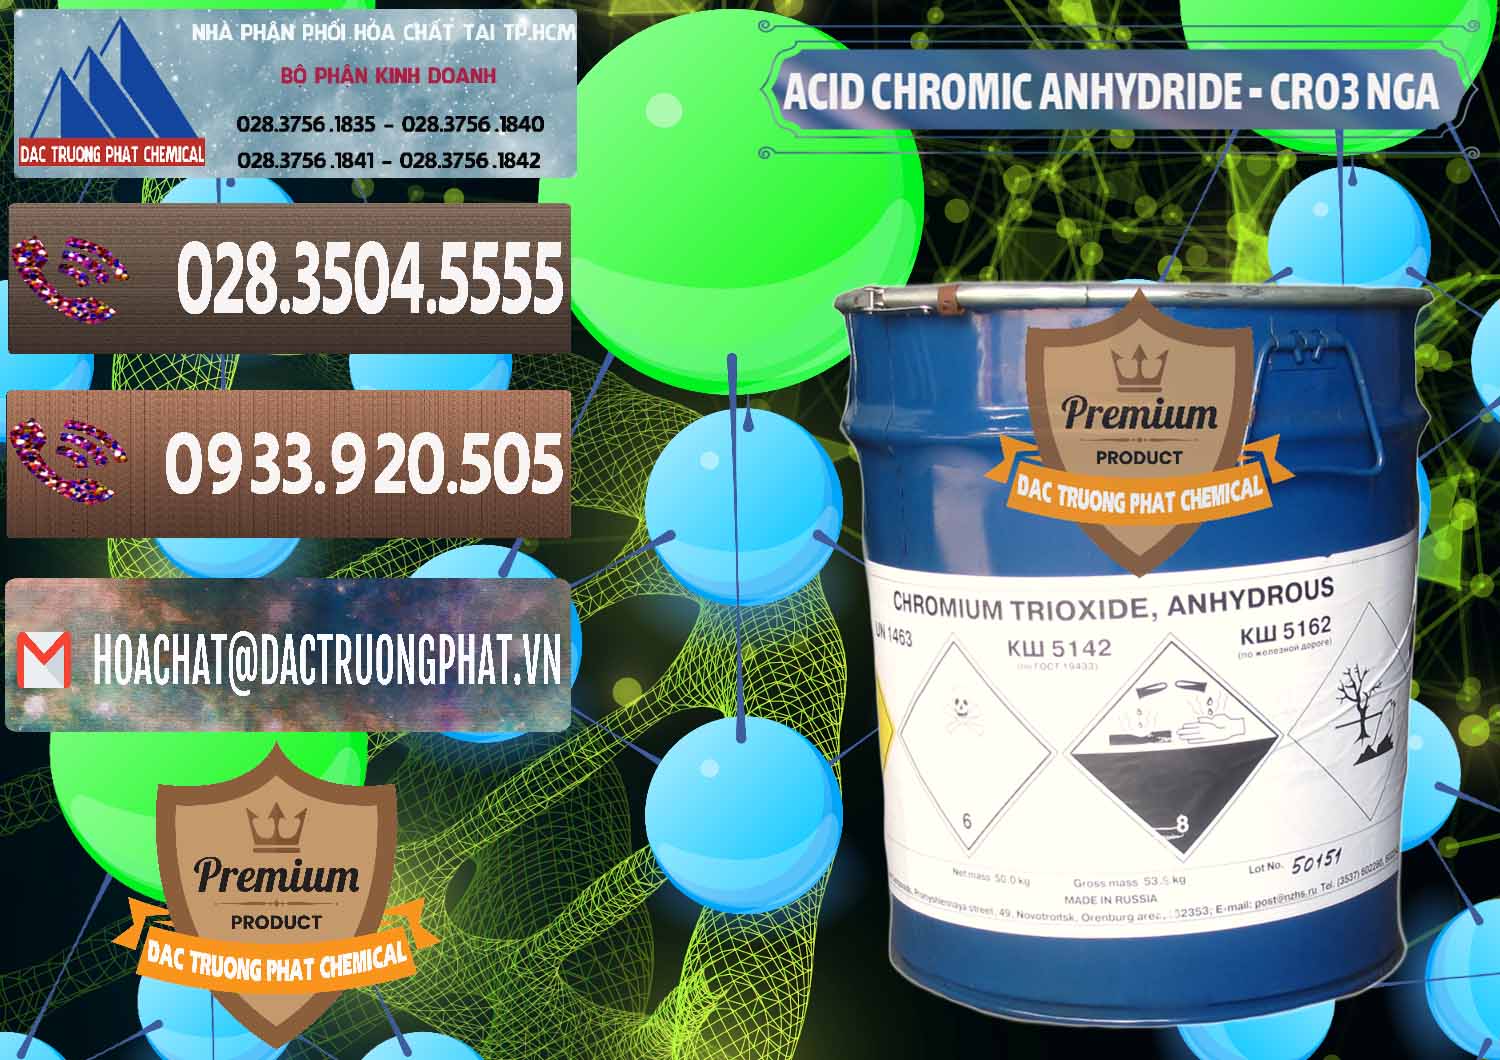 Nơi chuyên cung ứng _ bán Acid Chromic Anhydride - Cromic CRO3 Nga Russia - 0006 - Bán và phân phối hóa chất tại TP.HCM - hoachatviet.net